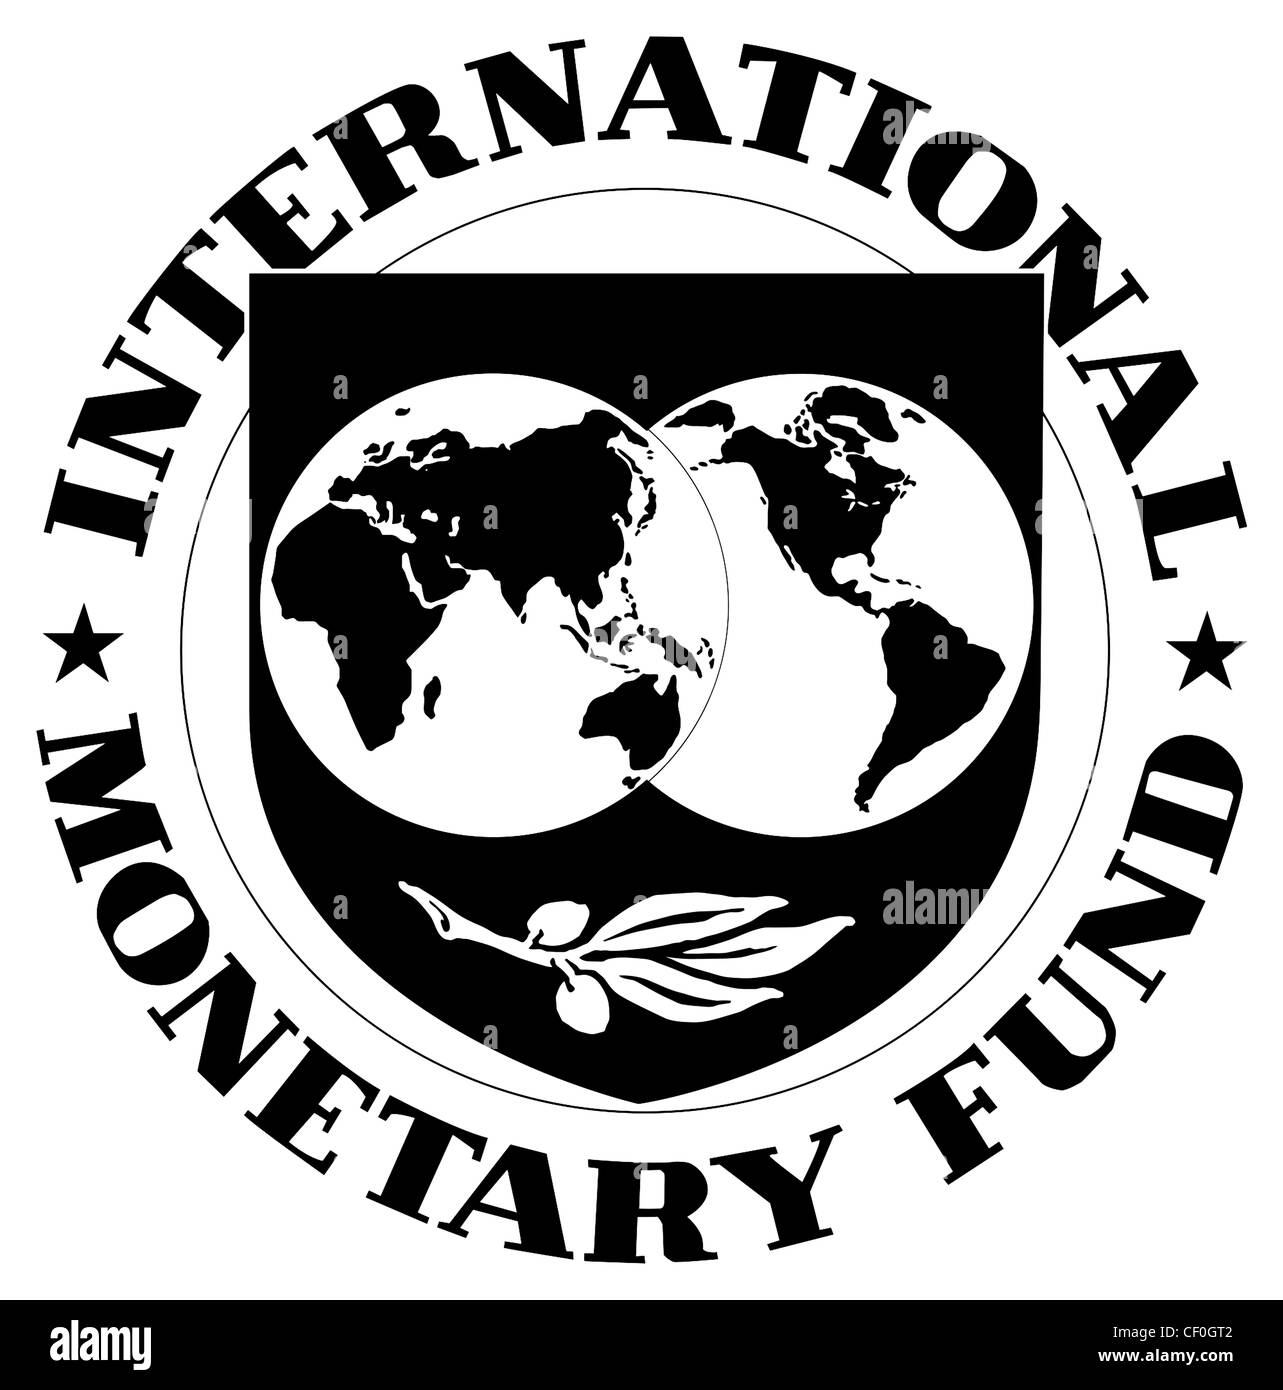 Logo of the International Monetary Fund IMF based in Washington. Stock Photo